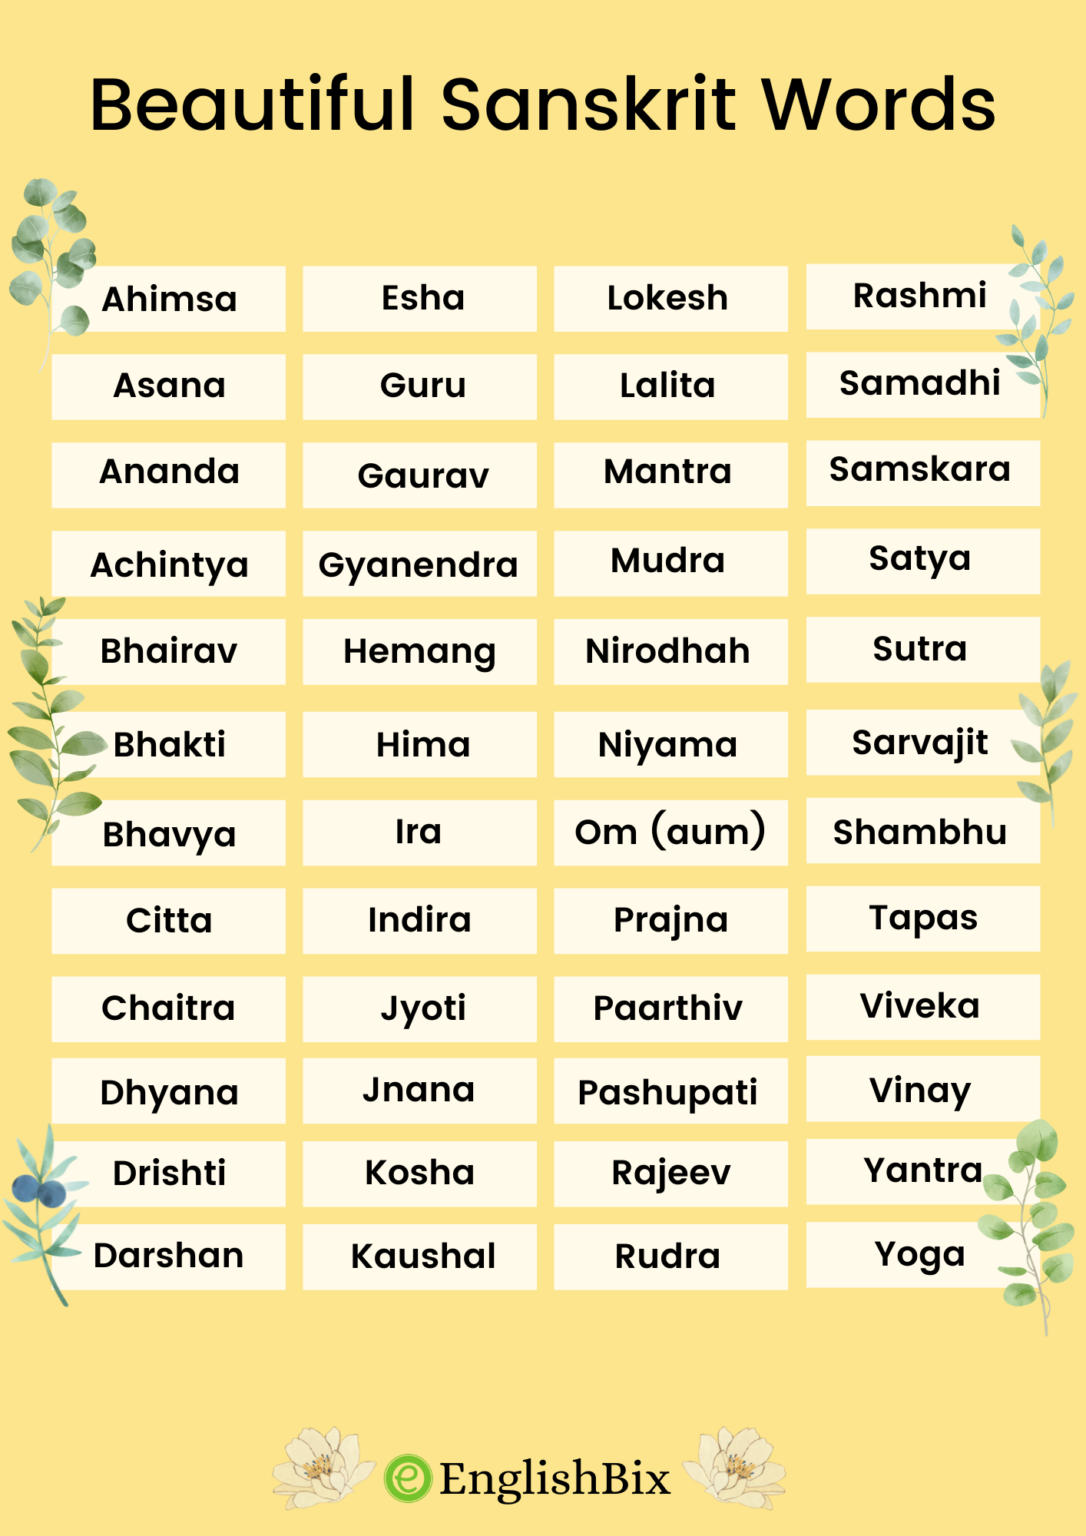 synonyms for homework in sanskrit